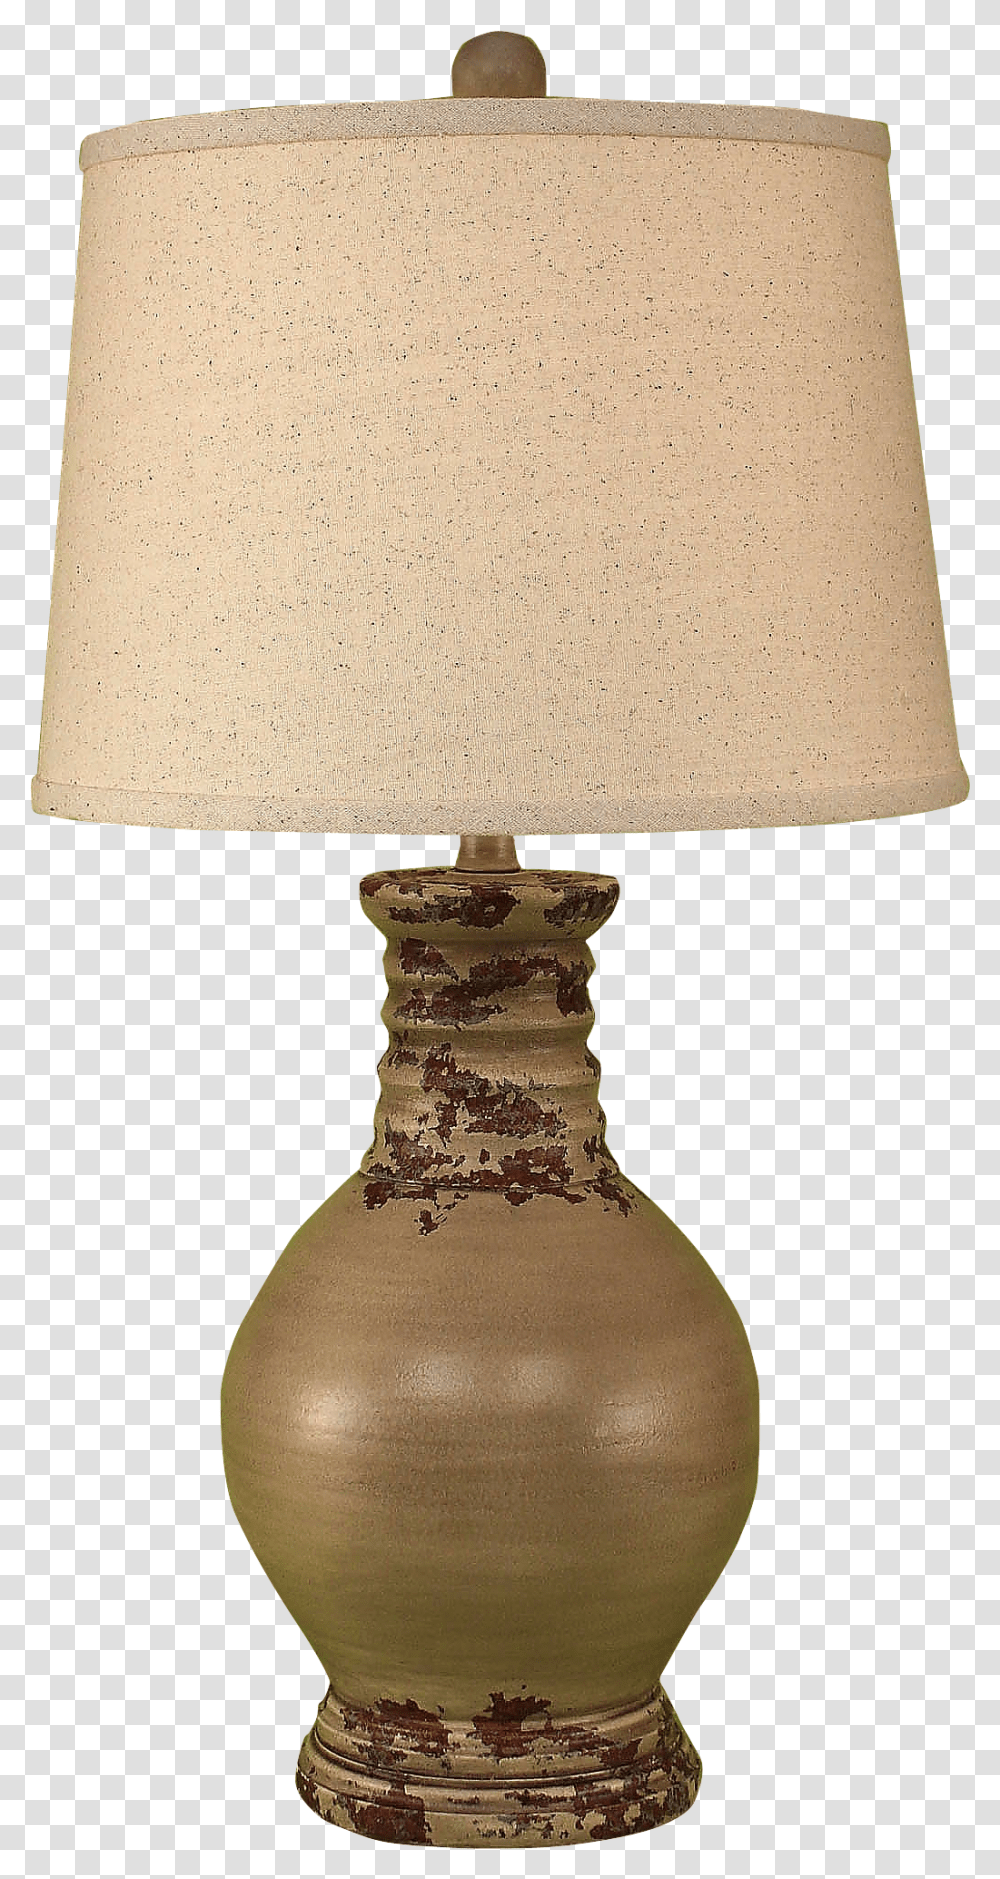 Lamp, Table Lamp, Lampshade, Jug Transparent Png